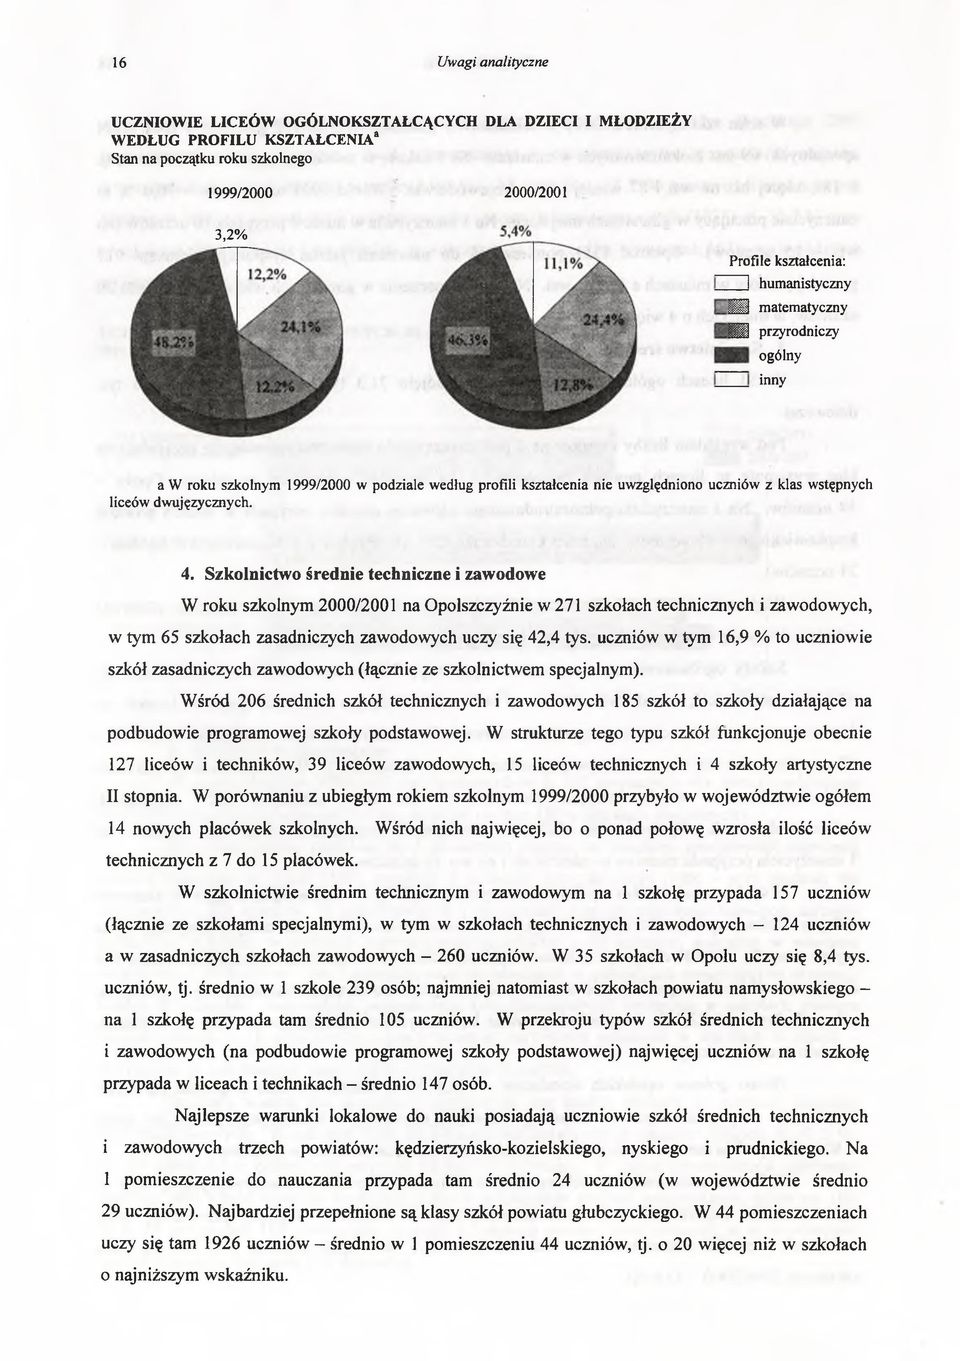 Szkolnictwo średnie techniczne i zawodowe W roku szkolnym 2000/2001 na Opolszczyźnie w 271 szkołach technicznych i zawodowych, 65 szkołach zasadniczych zawodowych uczy się 42,4 tys.